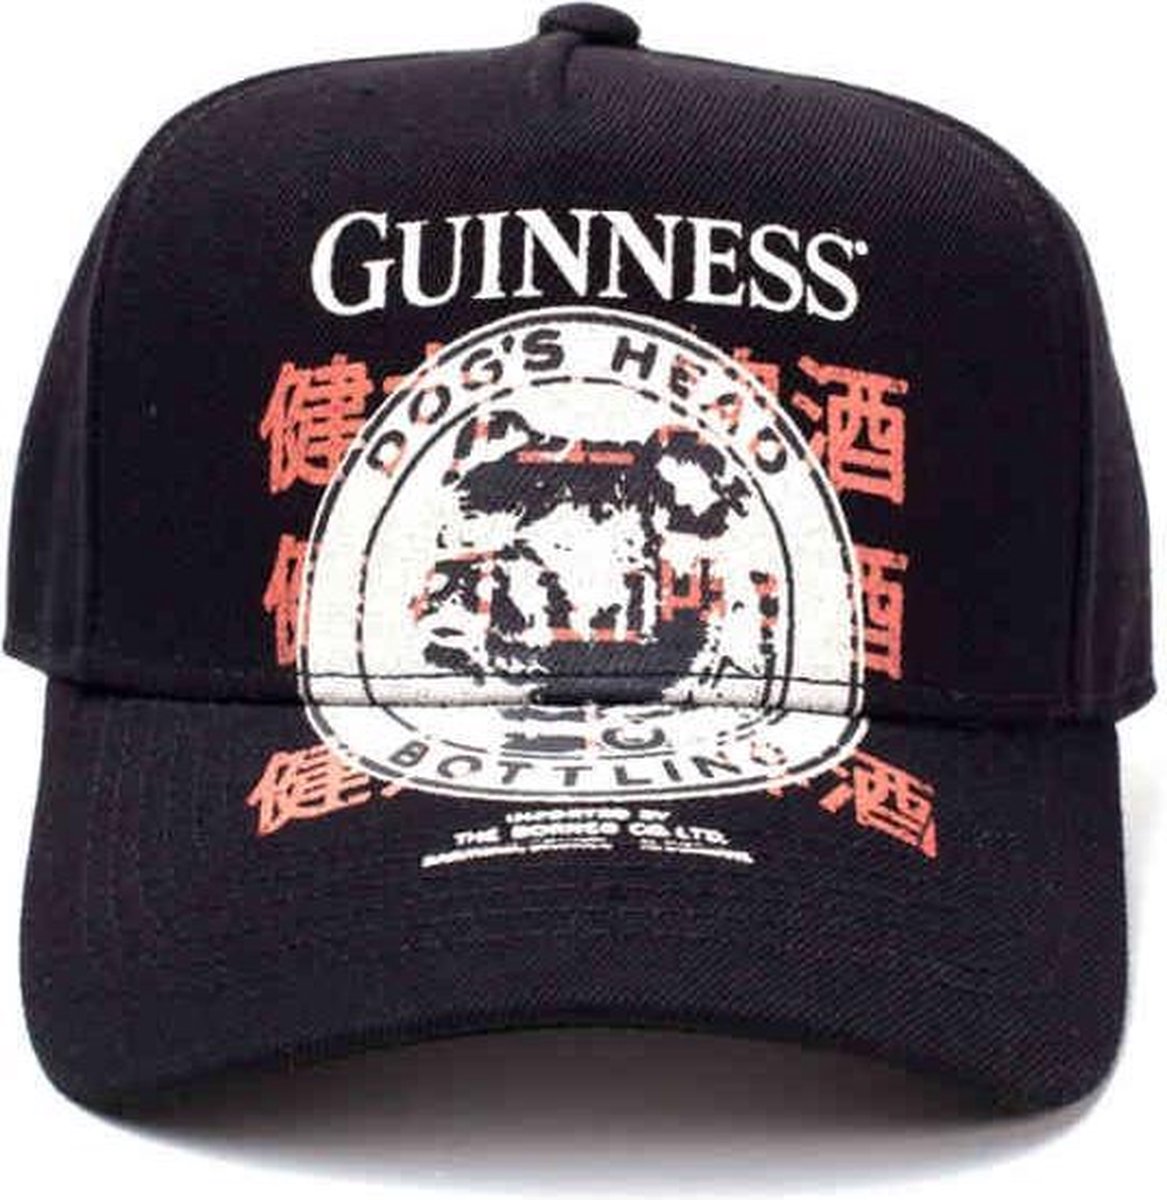 Guinness - Dog s Head Bottling Logo Curved Bill Cap